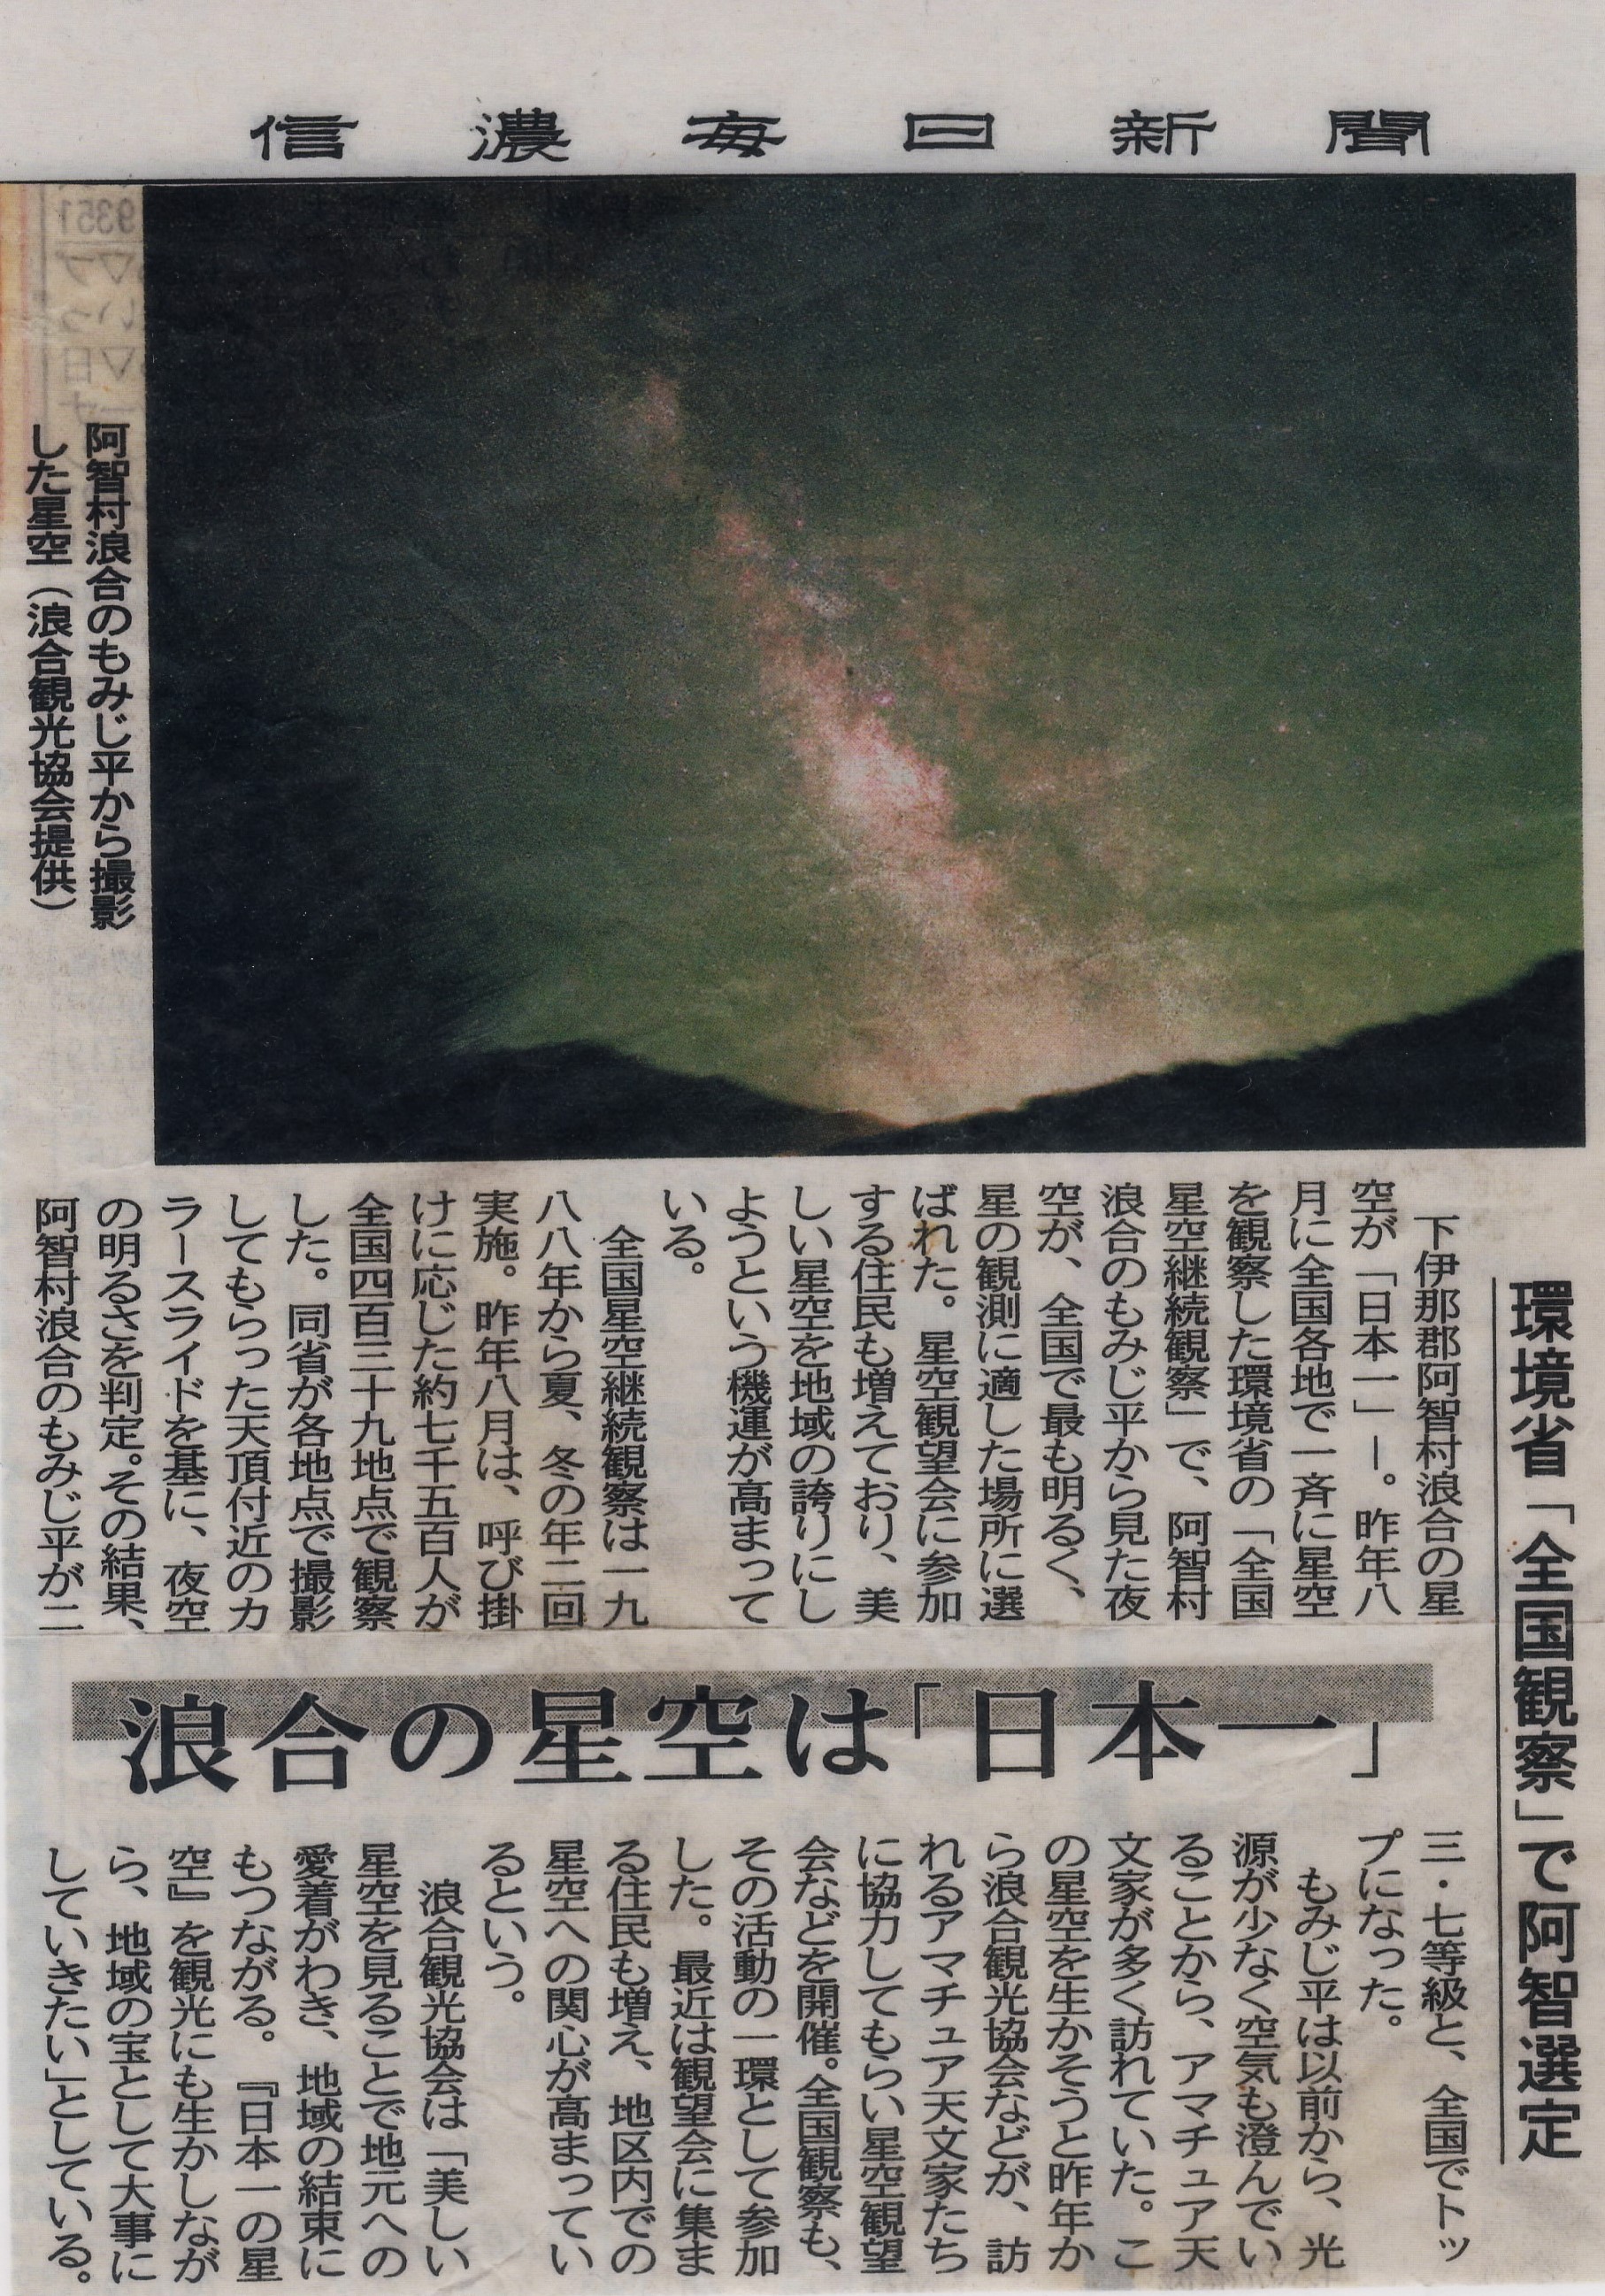 「日本一の星空」と認定された新聞記事